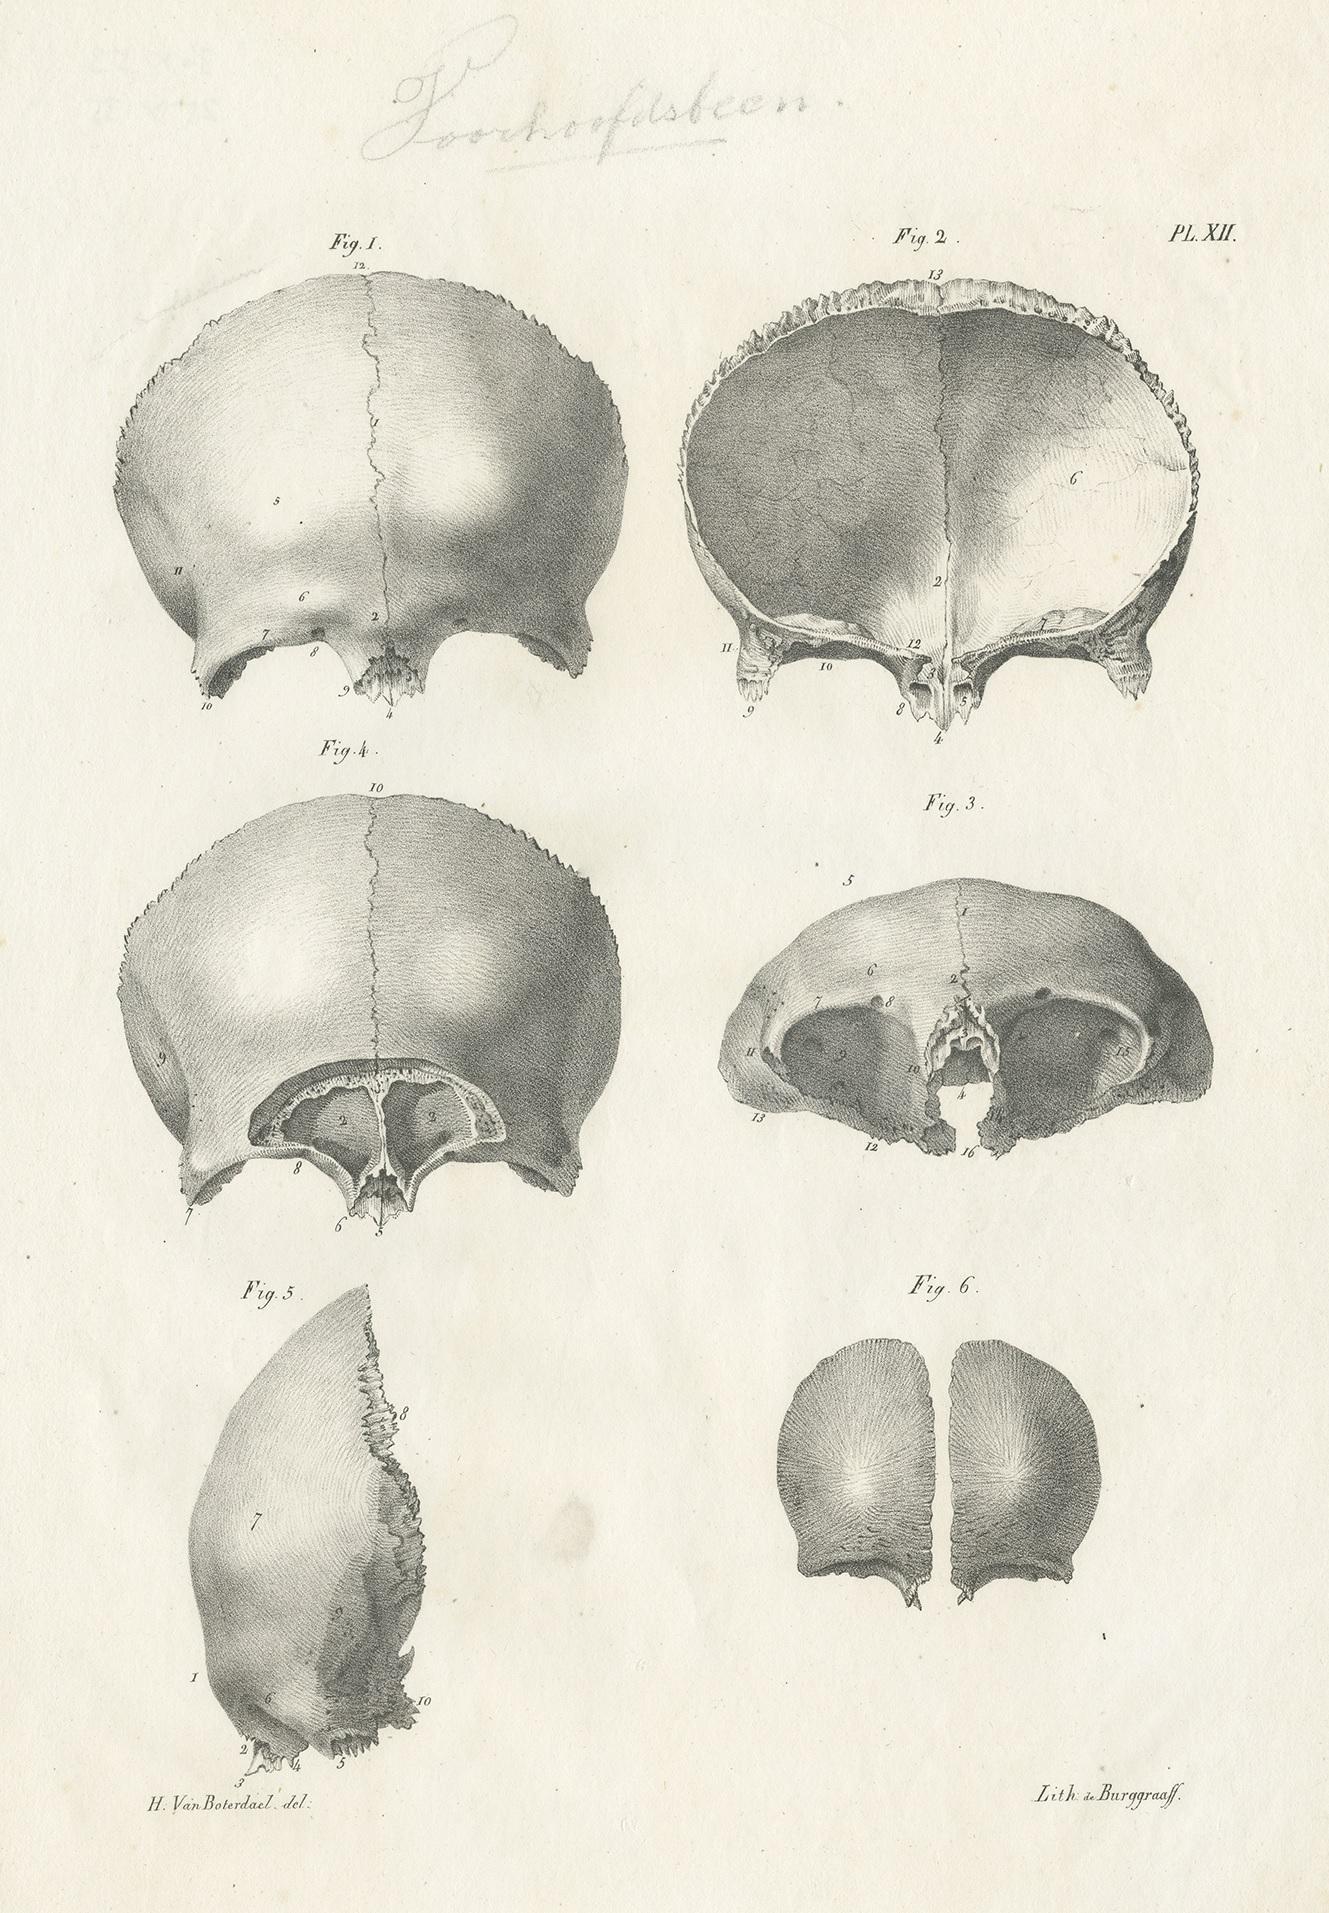 Gravure anatomique ancienne montrant le crâne / cranium. Cette gravure provient de 